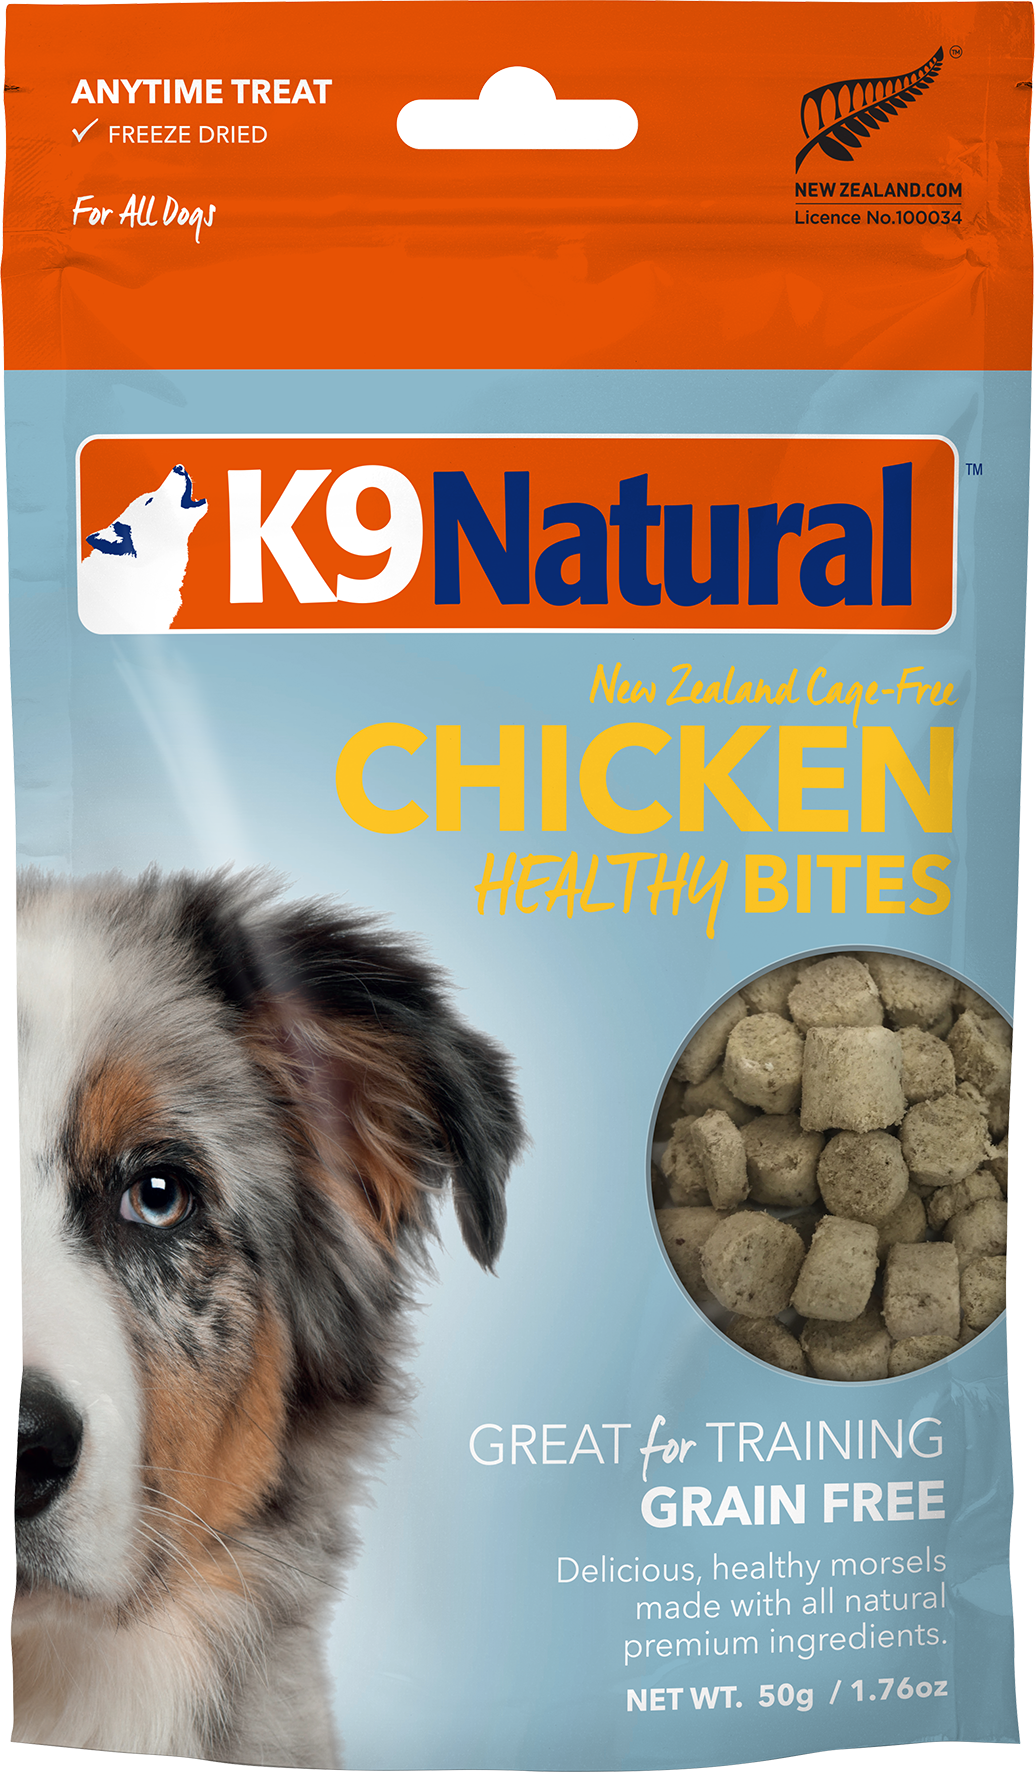 K9 Natural Healthy Bites - Chicken